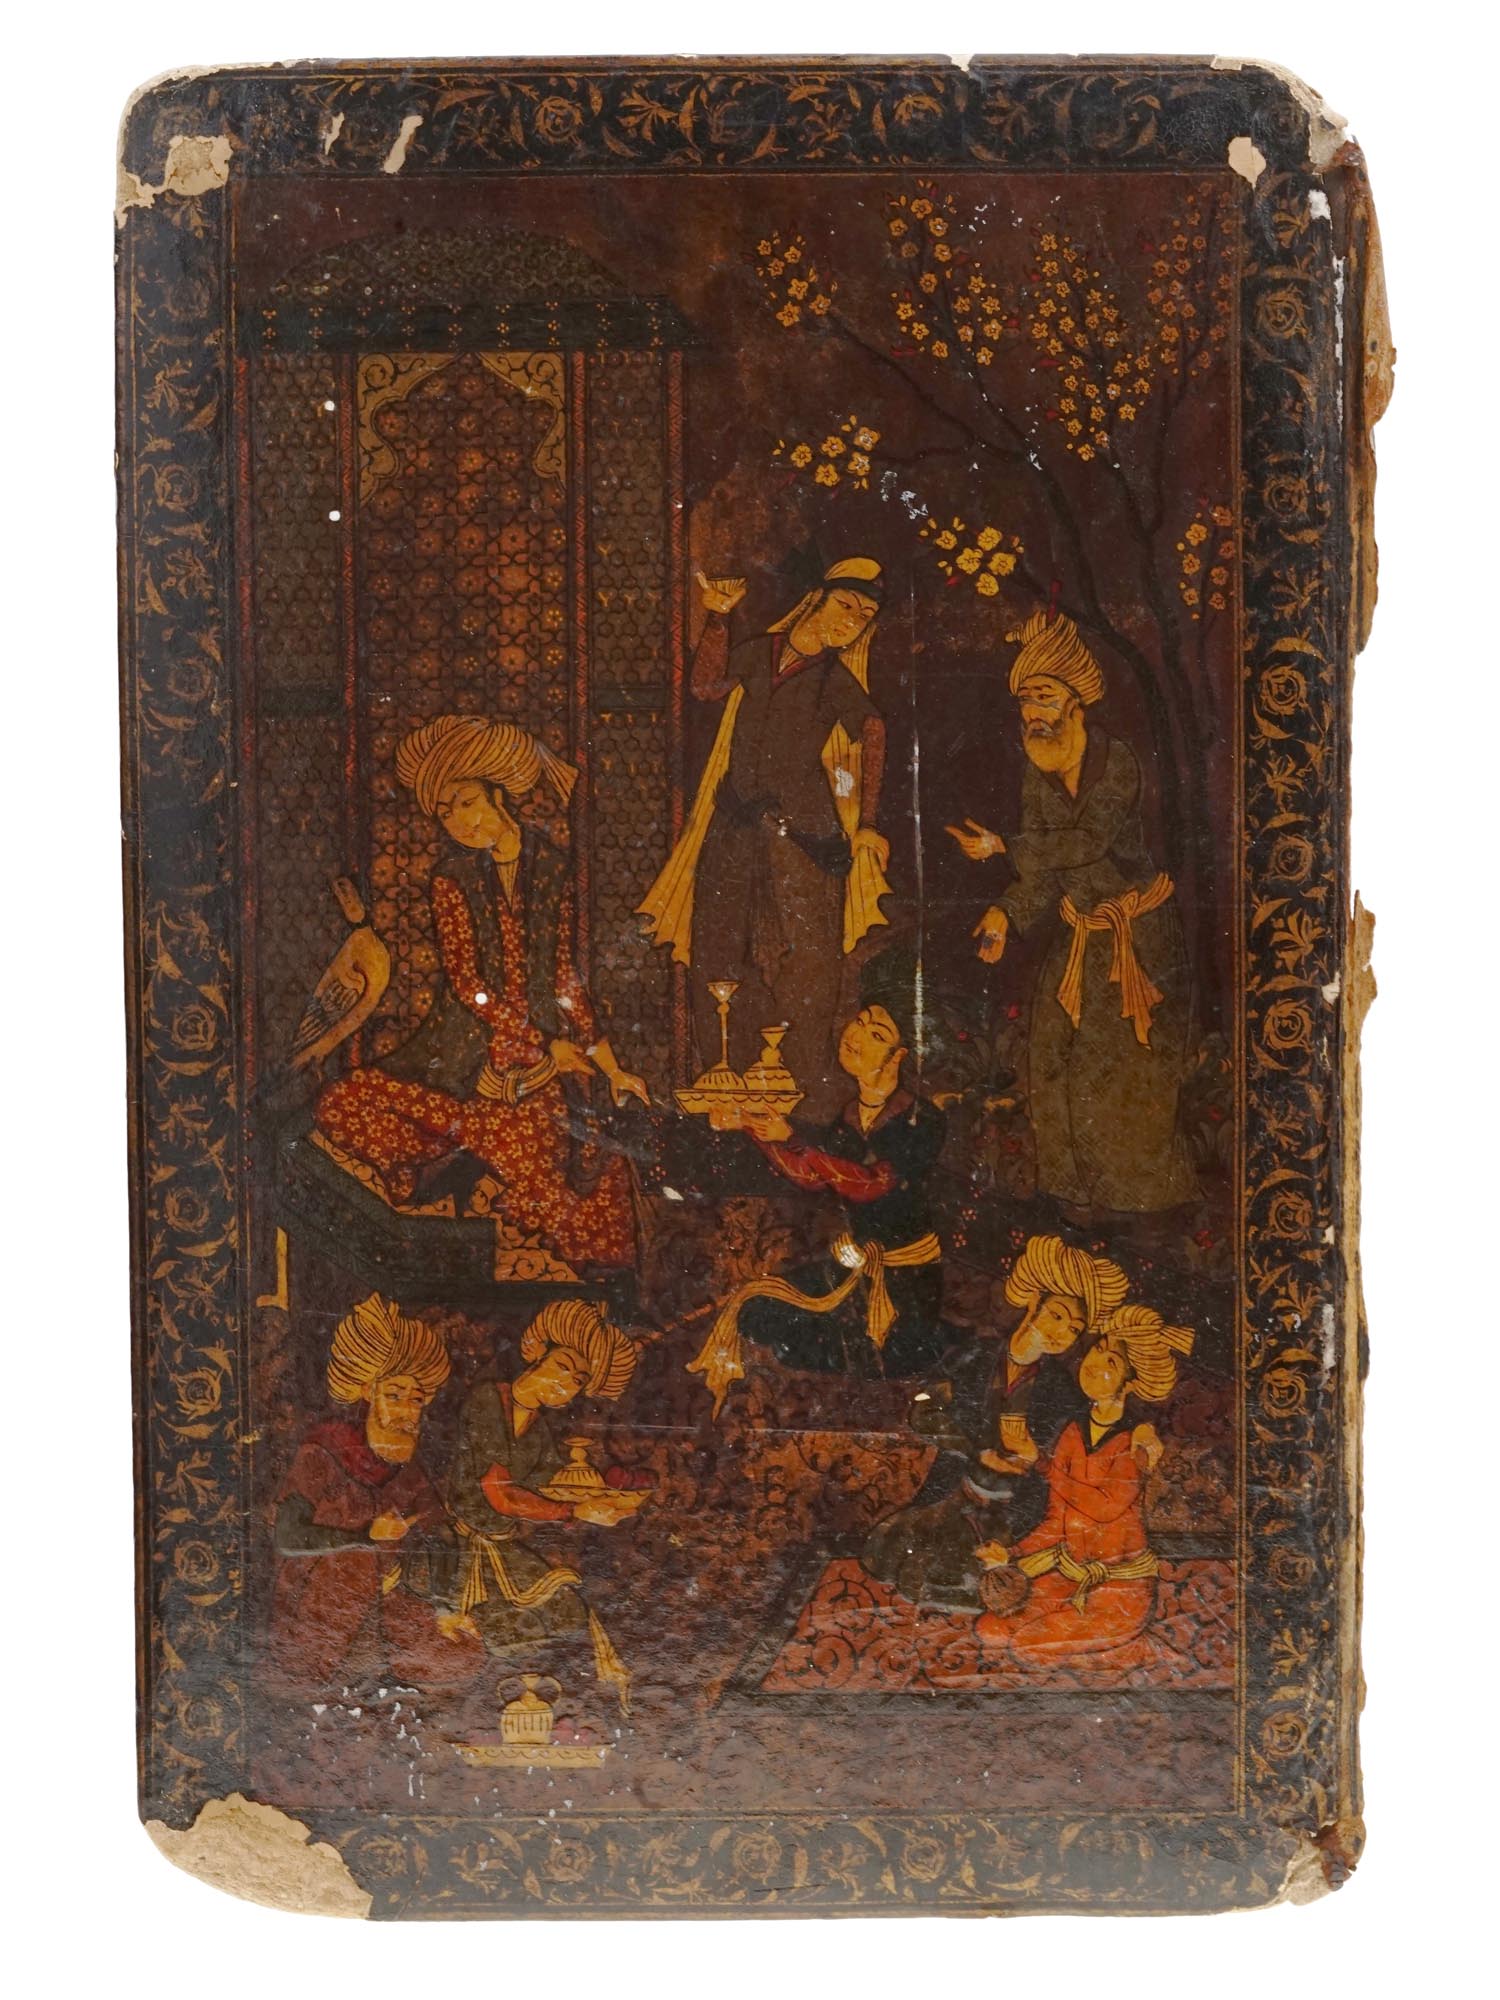 PERSIAN QAJAR PAPIER MACHE LACQUER BOOK BINDING PIC-1